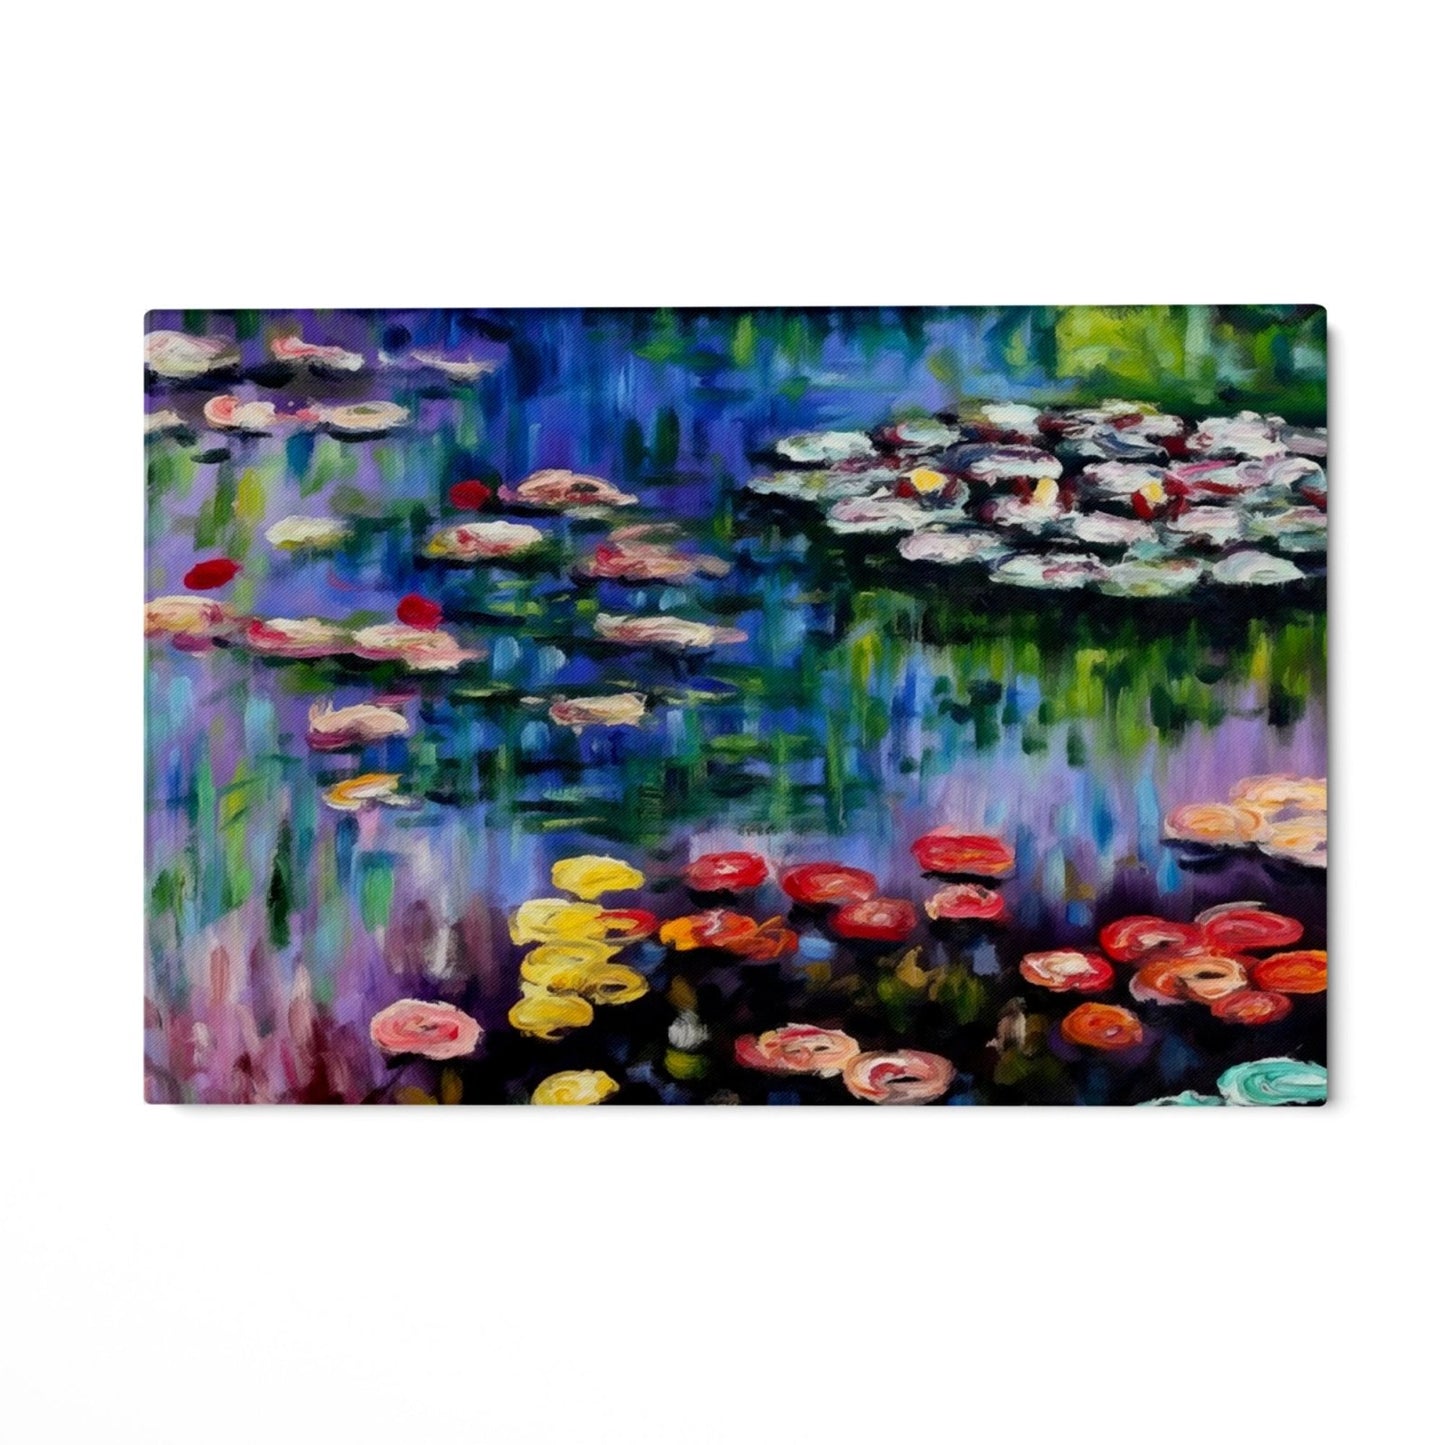 Åkander i dammen ved Giverny - Claude Monet